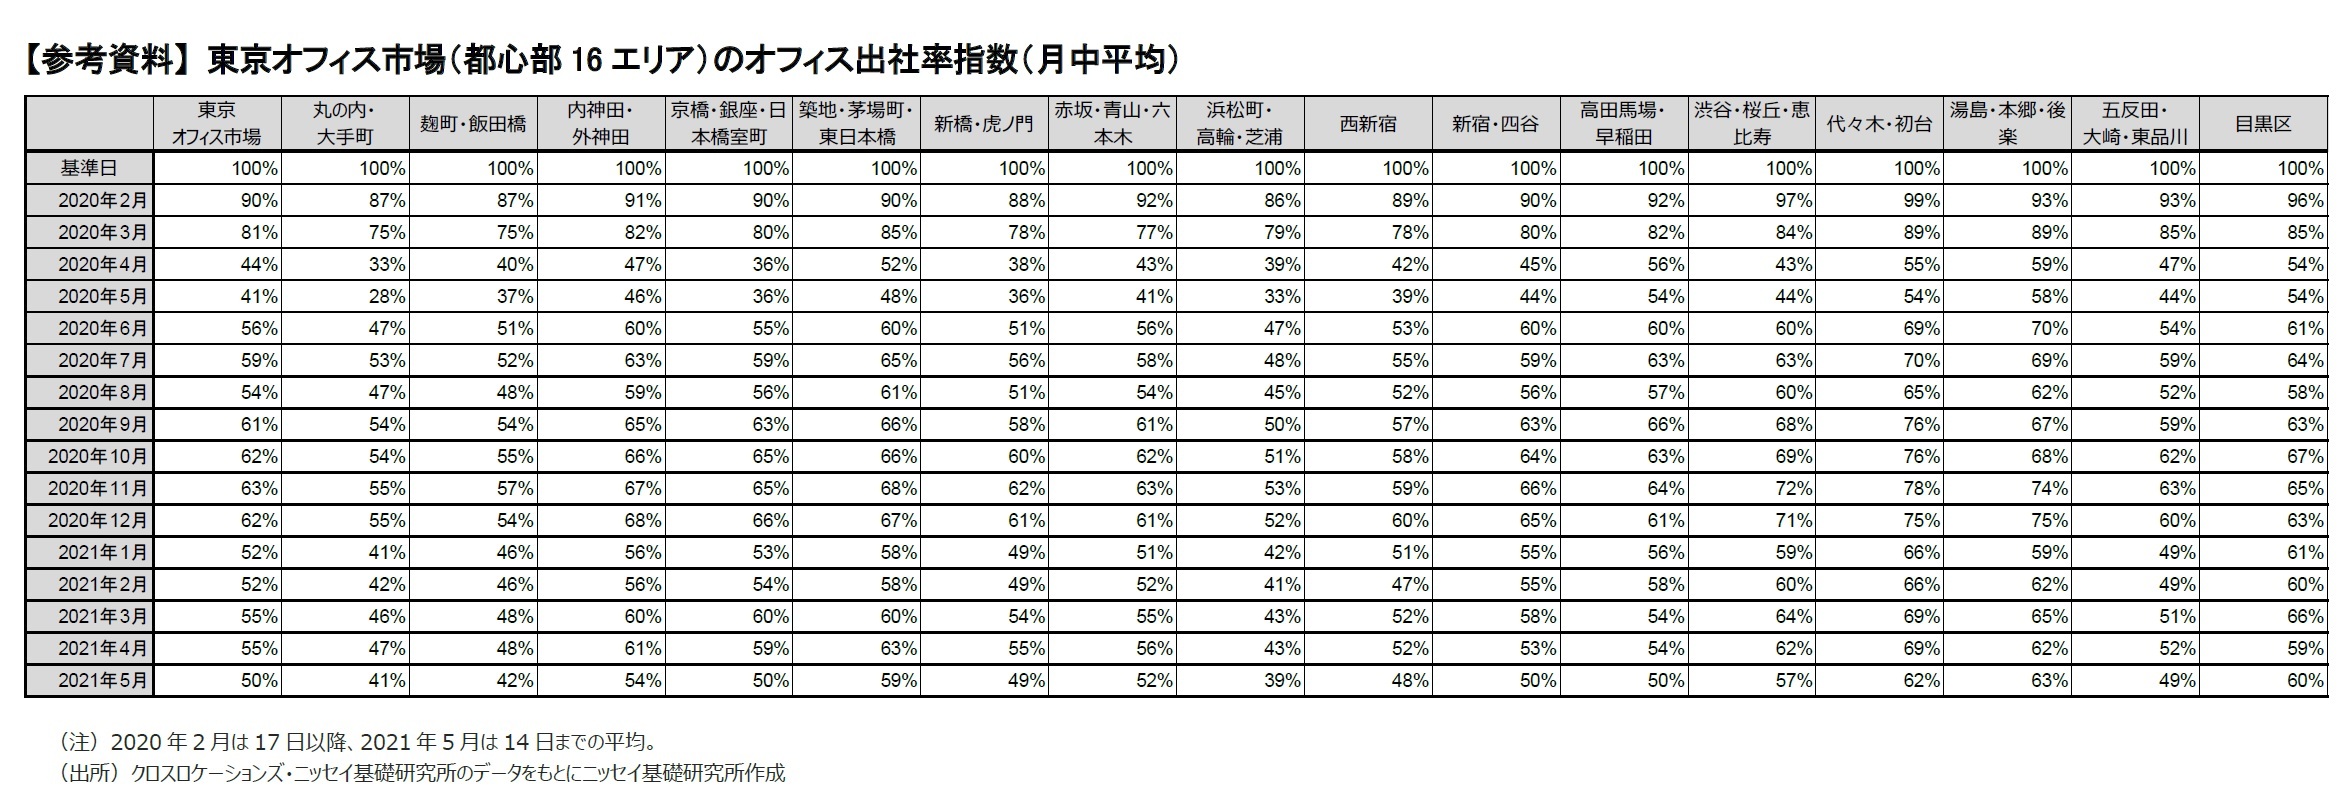 【参考資料】 東京オフィス市場（都心部16エリア）のオフィス出社率指数（月中平均）